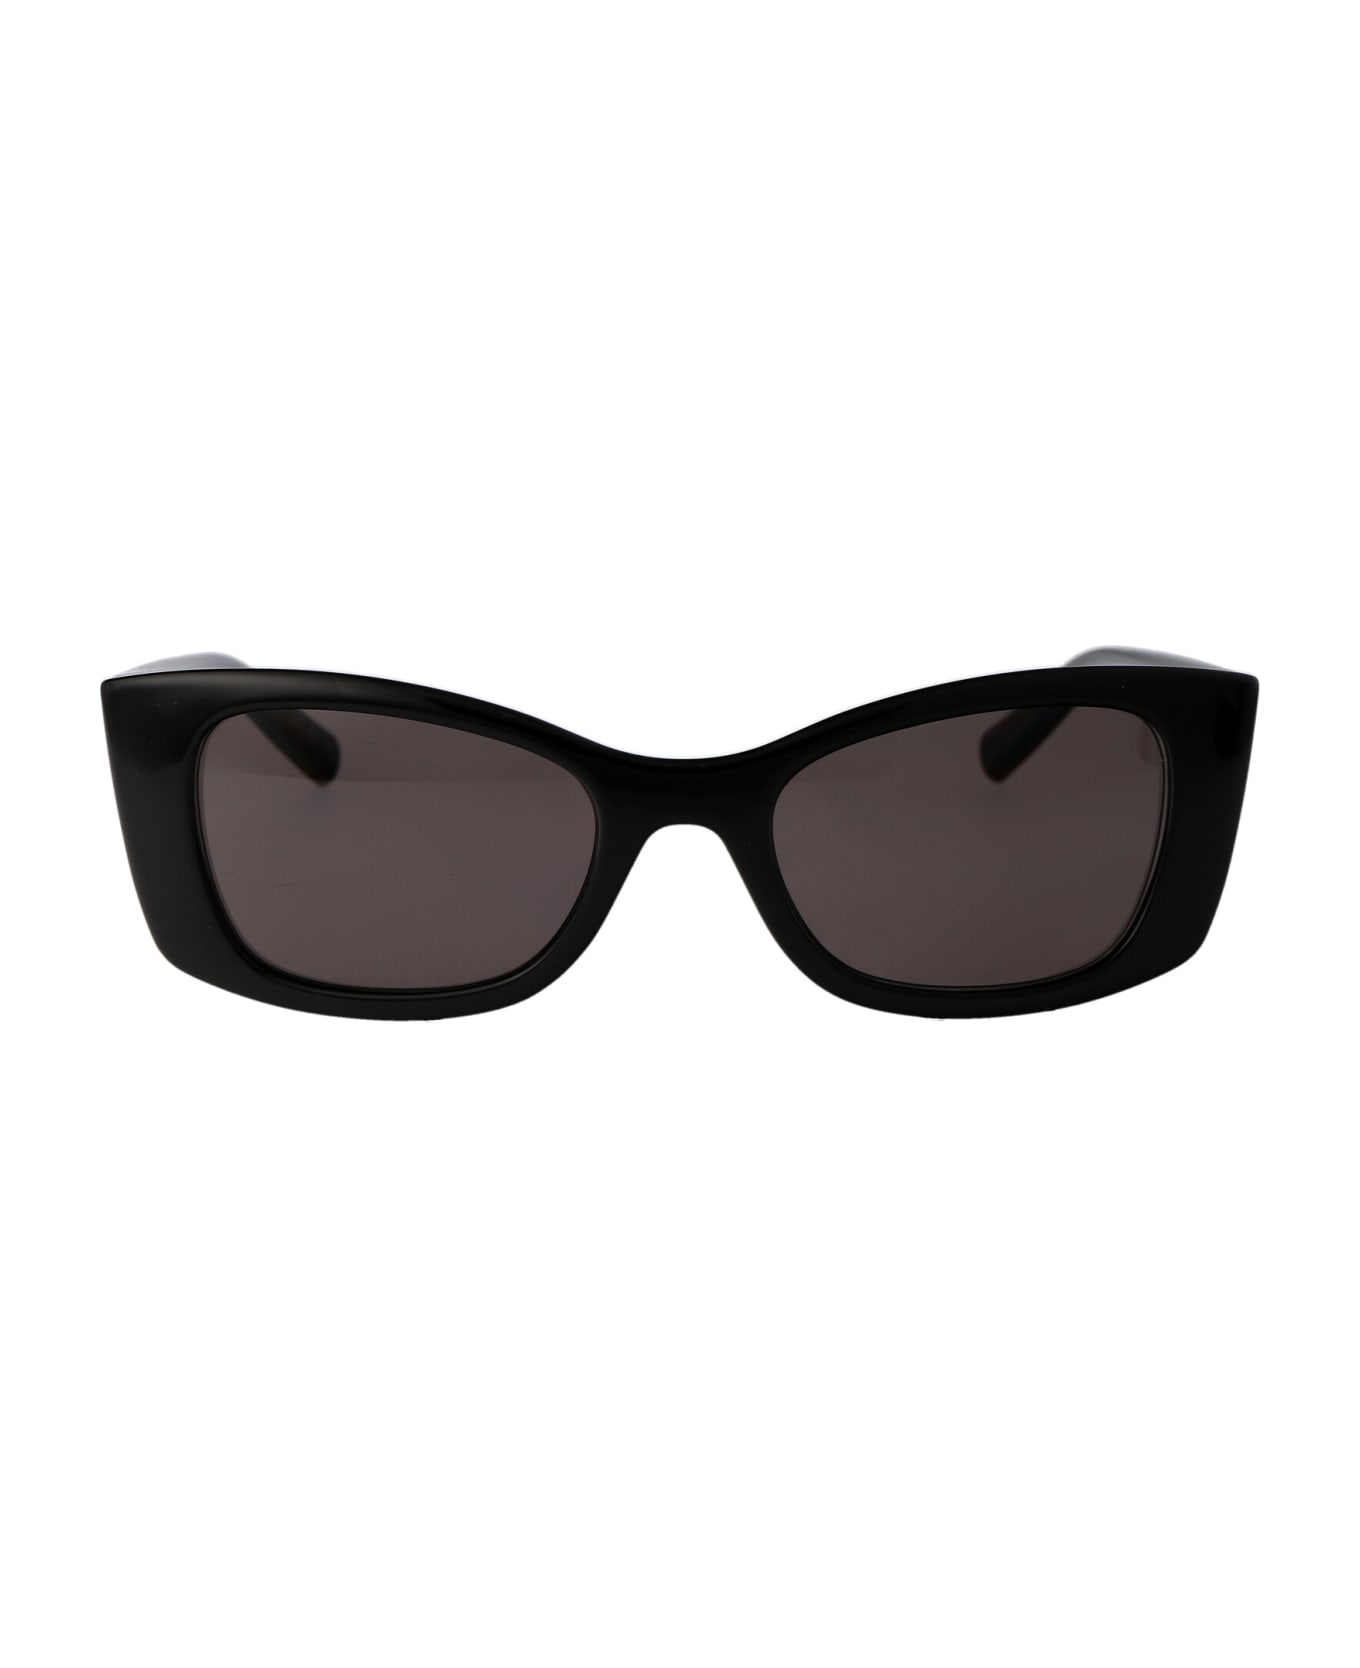 Saint Laurent Eyewear Sl 593 Sunglasses - 001 BLACK BLACK BLACK